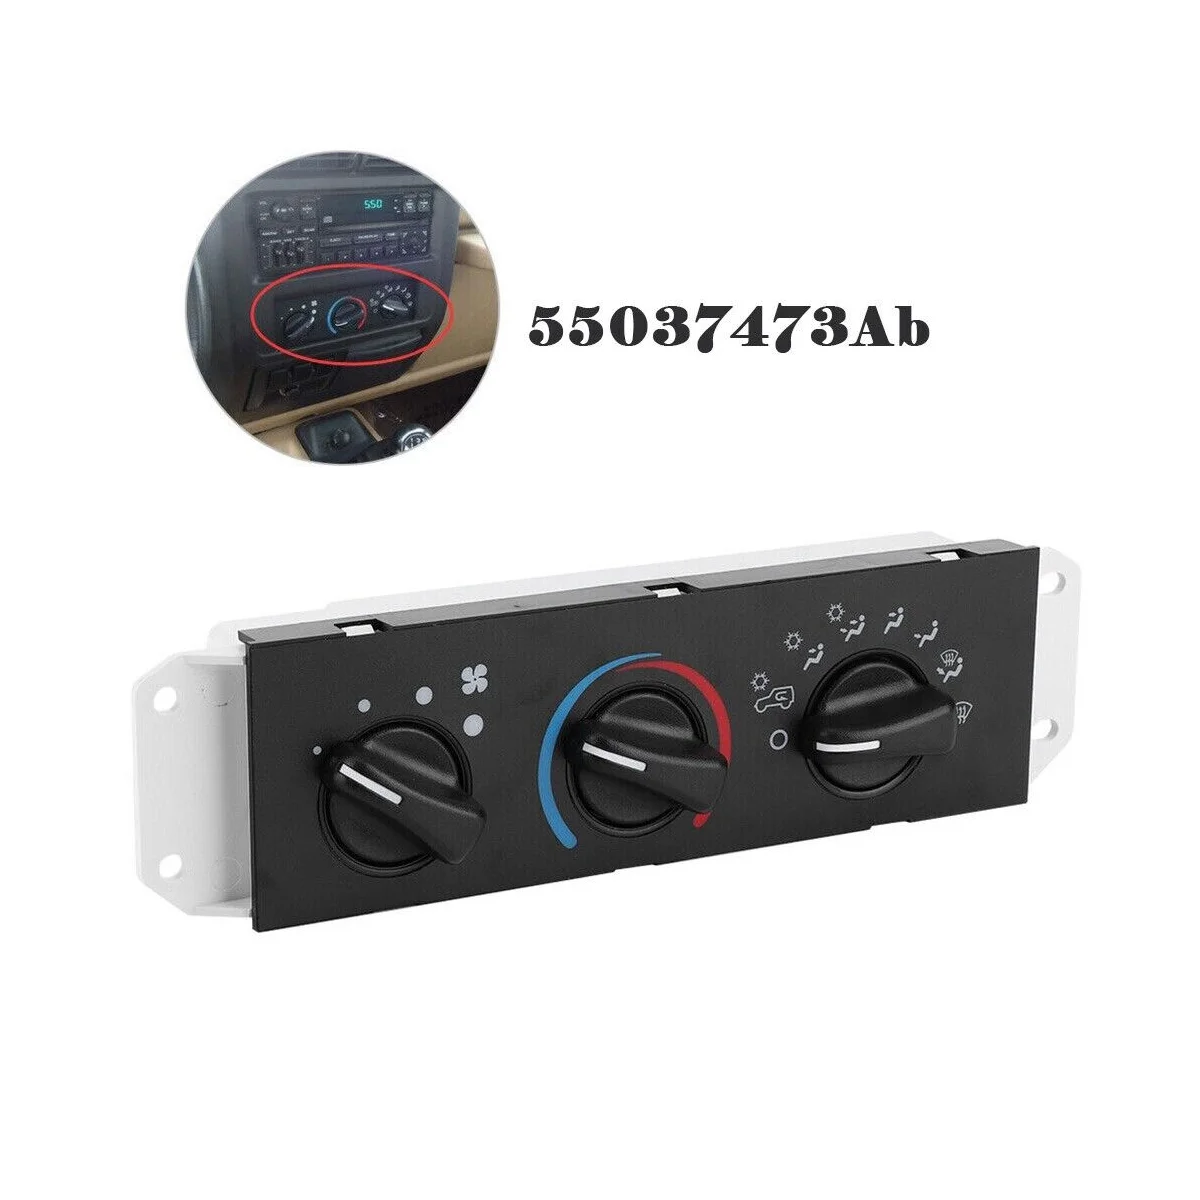 

Автомобильный обогреватель, тепловой вентилятор, переключатель контроля климата с переменным током для Jeep Wrangler 1999-2004 55037473AB